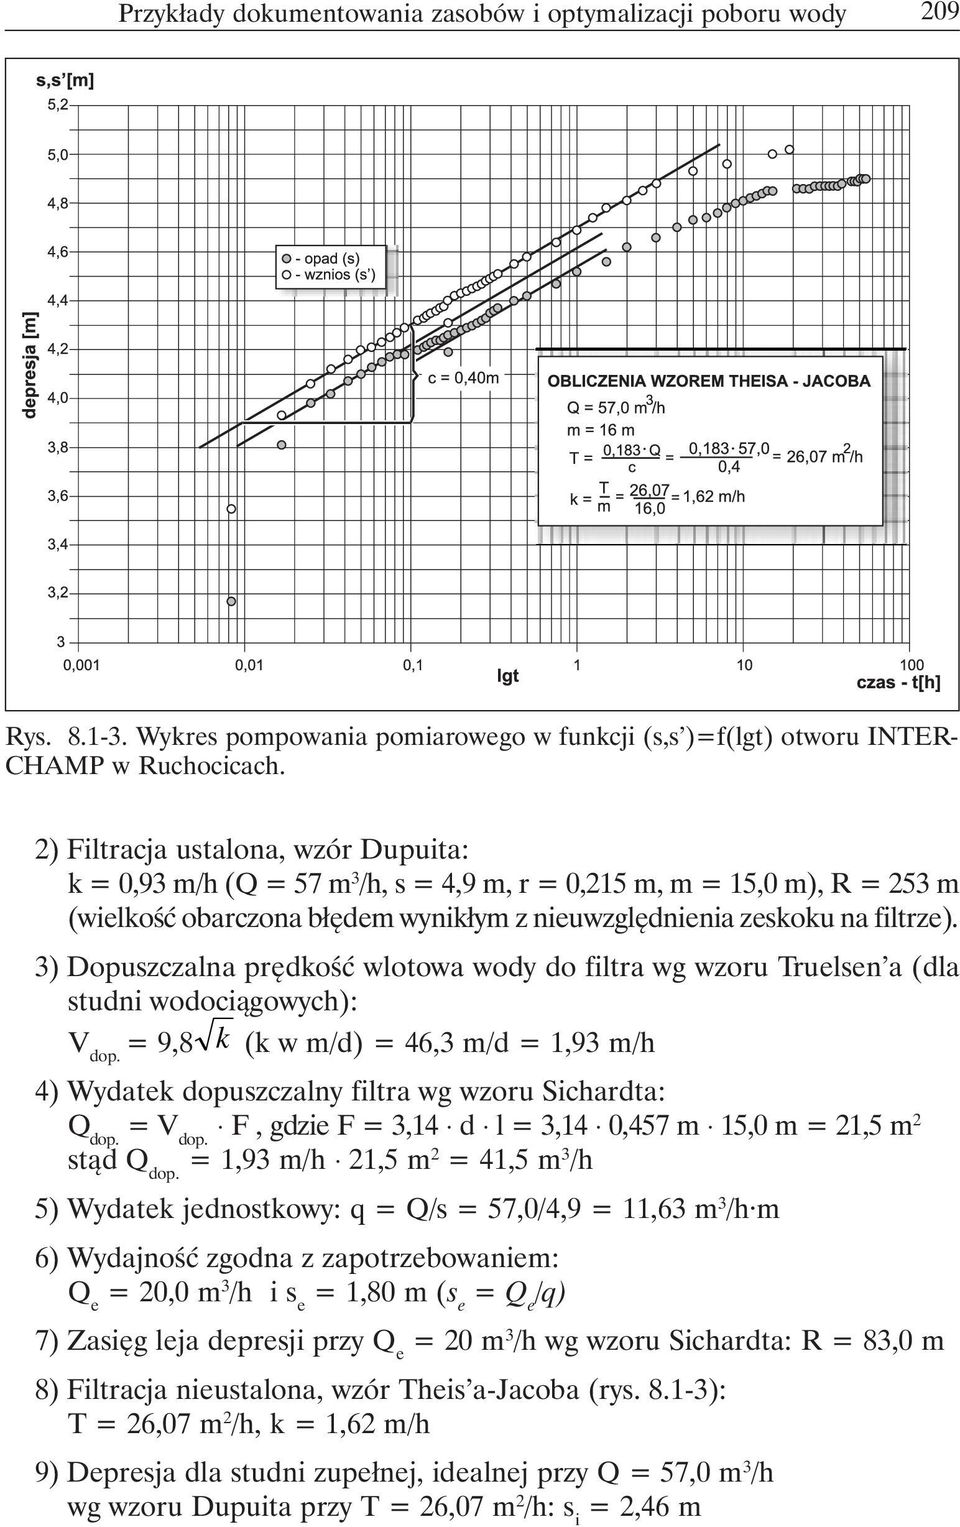 3) Dopuszczalna prędkość wlotowa wody do filtra wg wzoru Truelsen a (dla studni wodociągowych): V dop. = 9,8 k (k w m/d) = 46,3 m/d = 1,93 m/h 4) Wydatek dopuszczalny filtra wg wzoru Sichardta: Q dop.